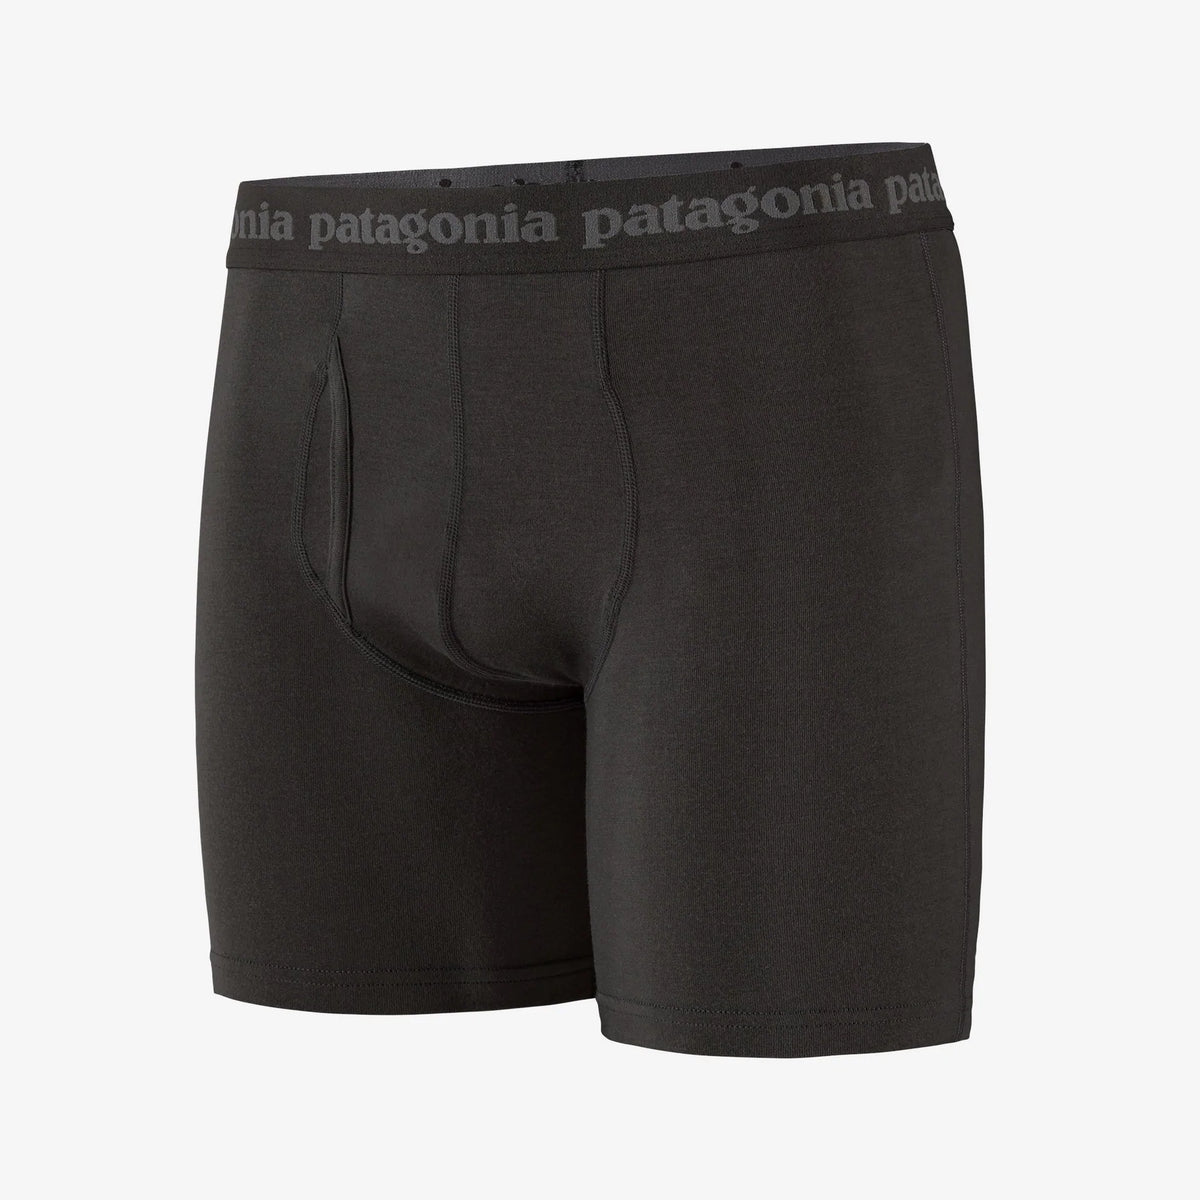 Patagonia Essential Boxer Briefs 6" (Men's)